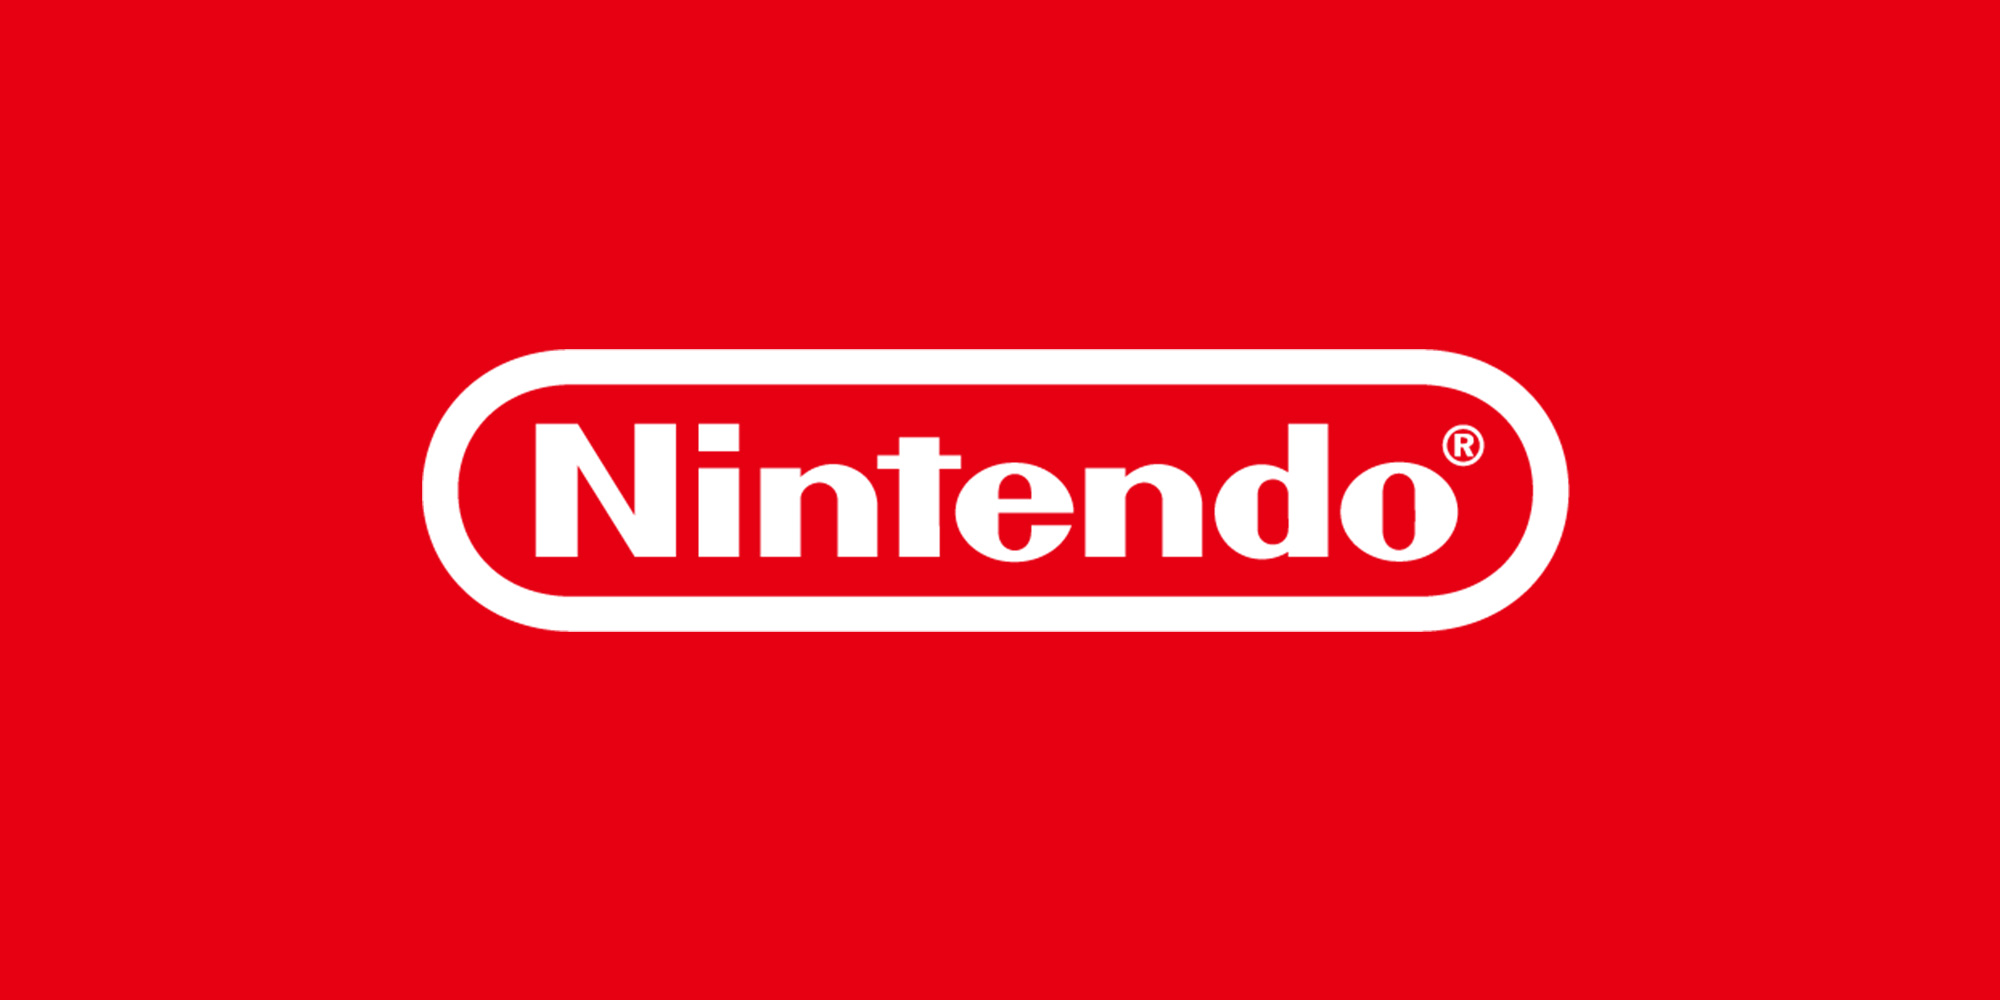 شرکت نینتندو (Nintendo), کنسول Nintendo 3DS, کنسول نینتندو سوییچ (Nintendo Switch)